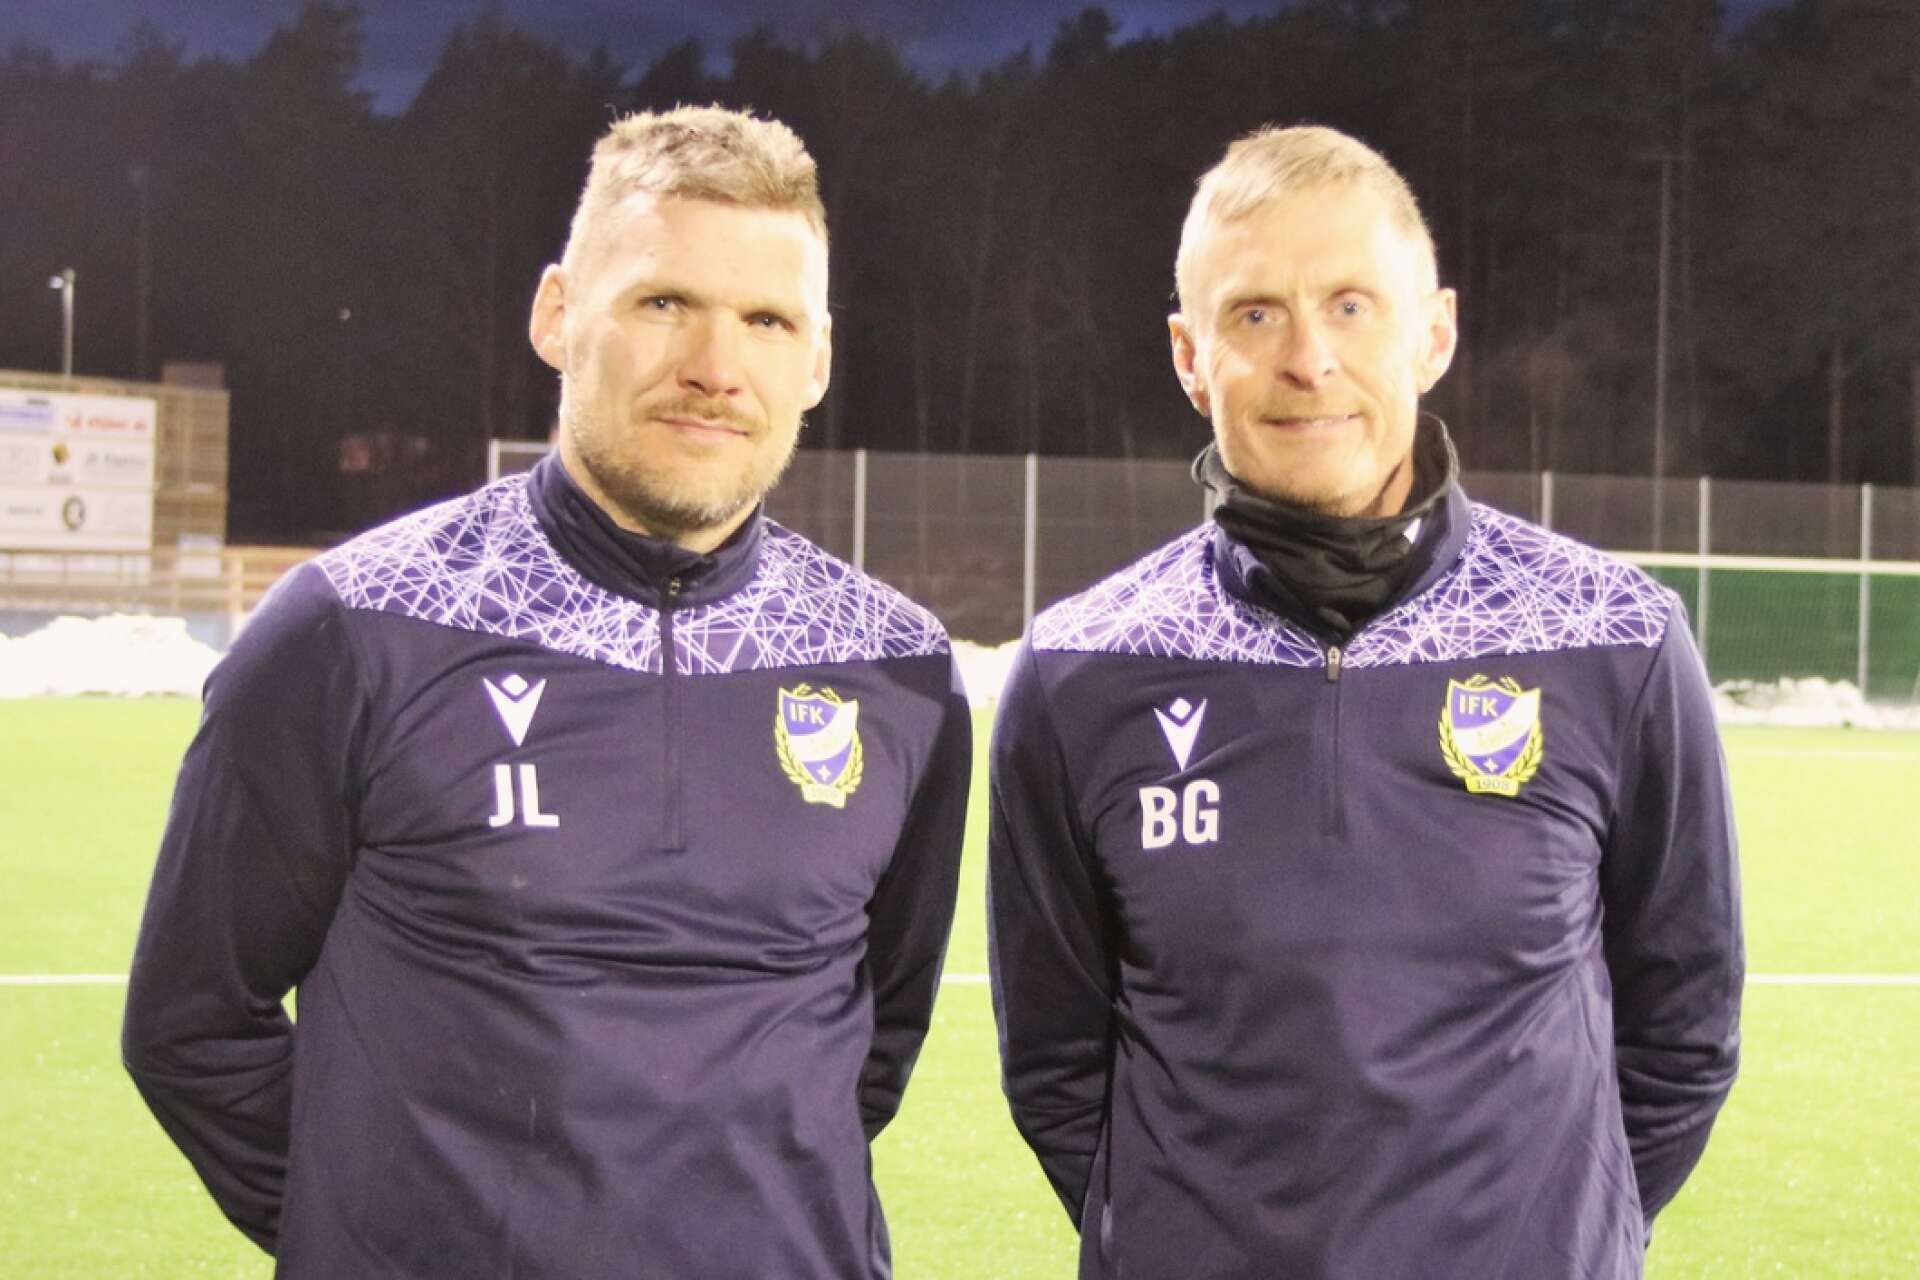 Johan Leandersson och Bjarne Gårdebratt är nya som tränare hos Åmålskamraterna.